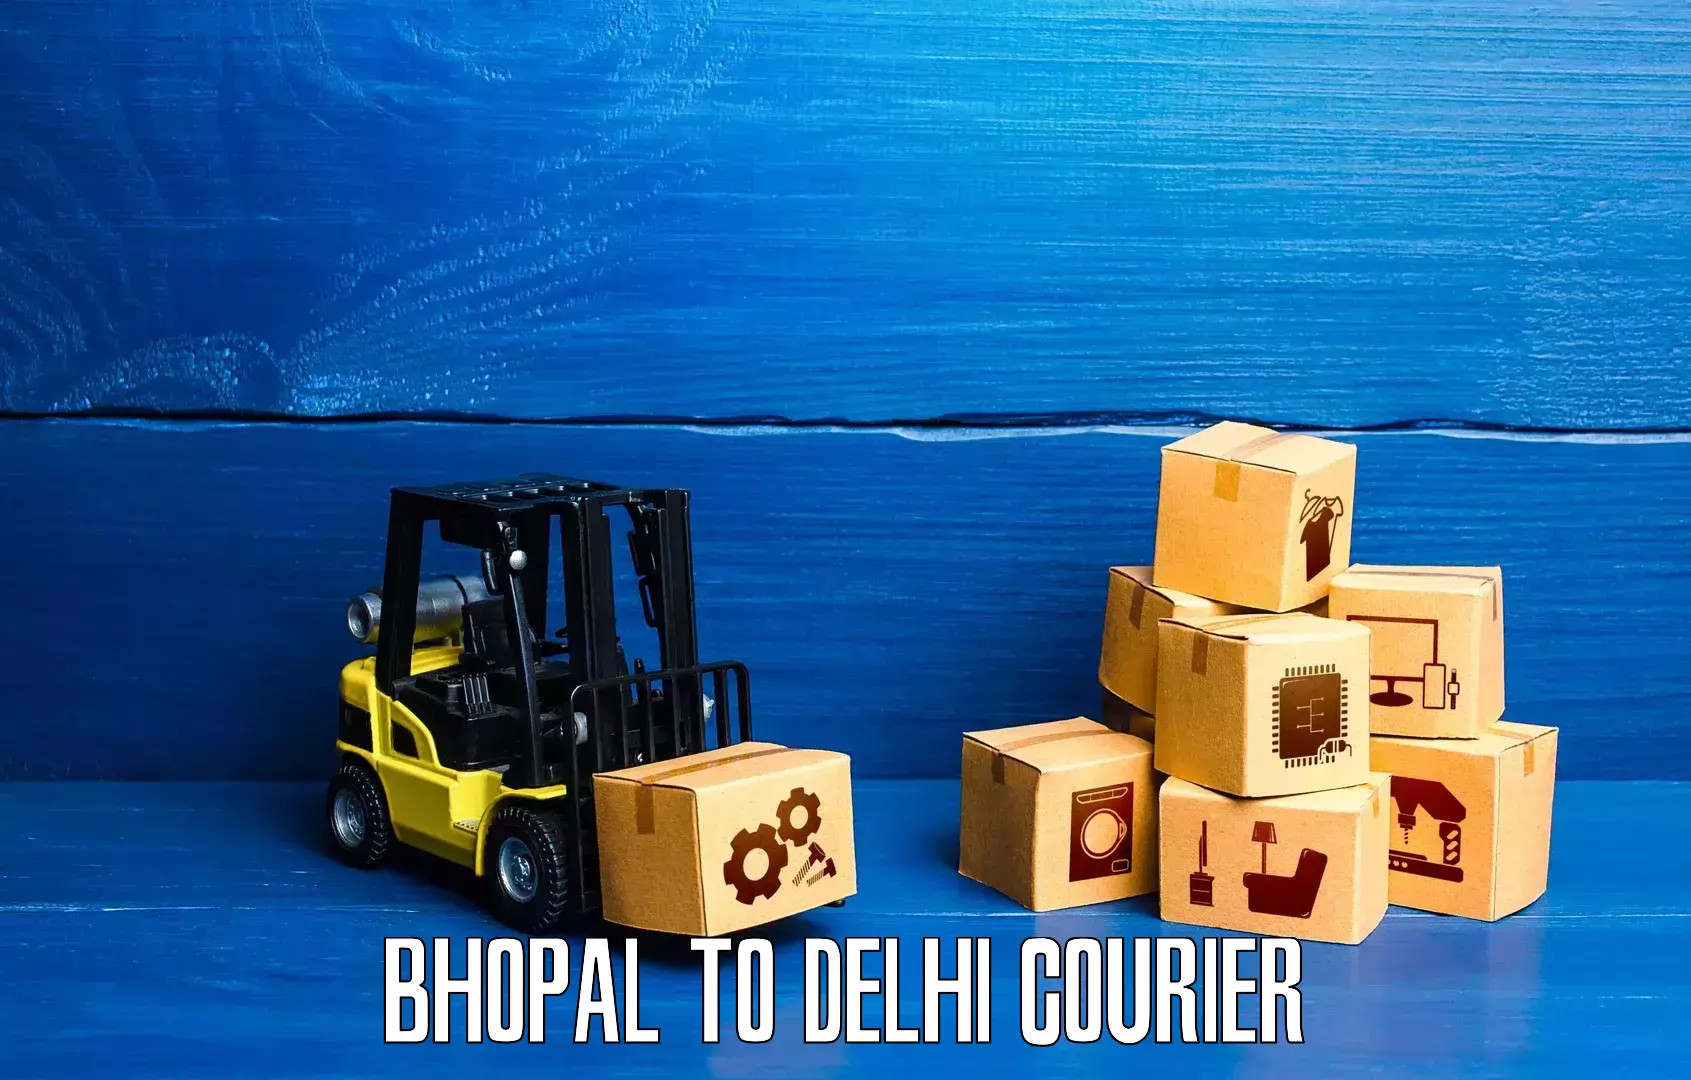 Express logistics providers Bhopal to East Delhi